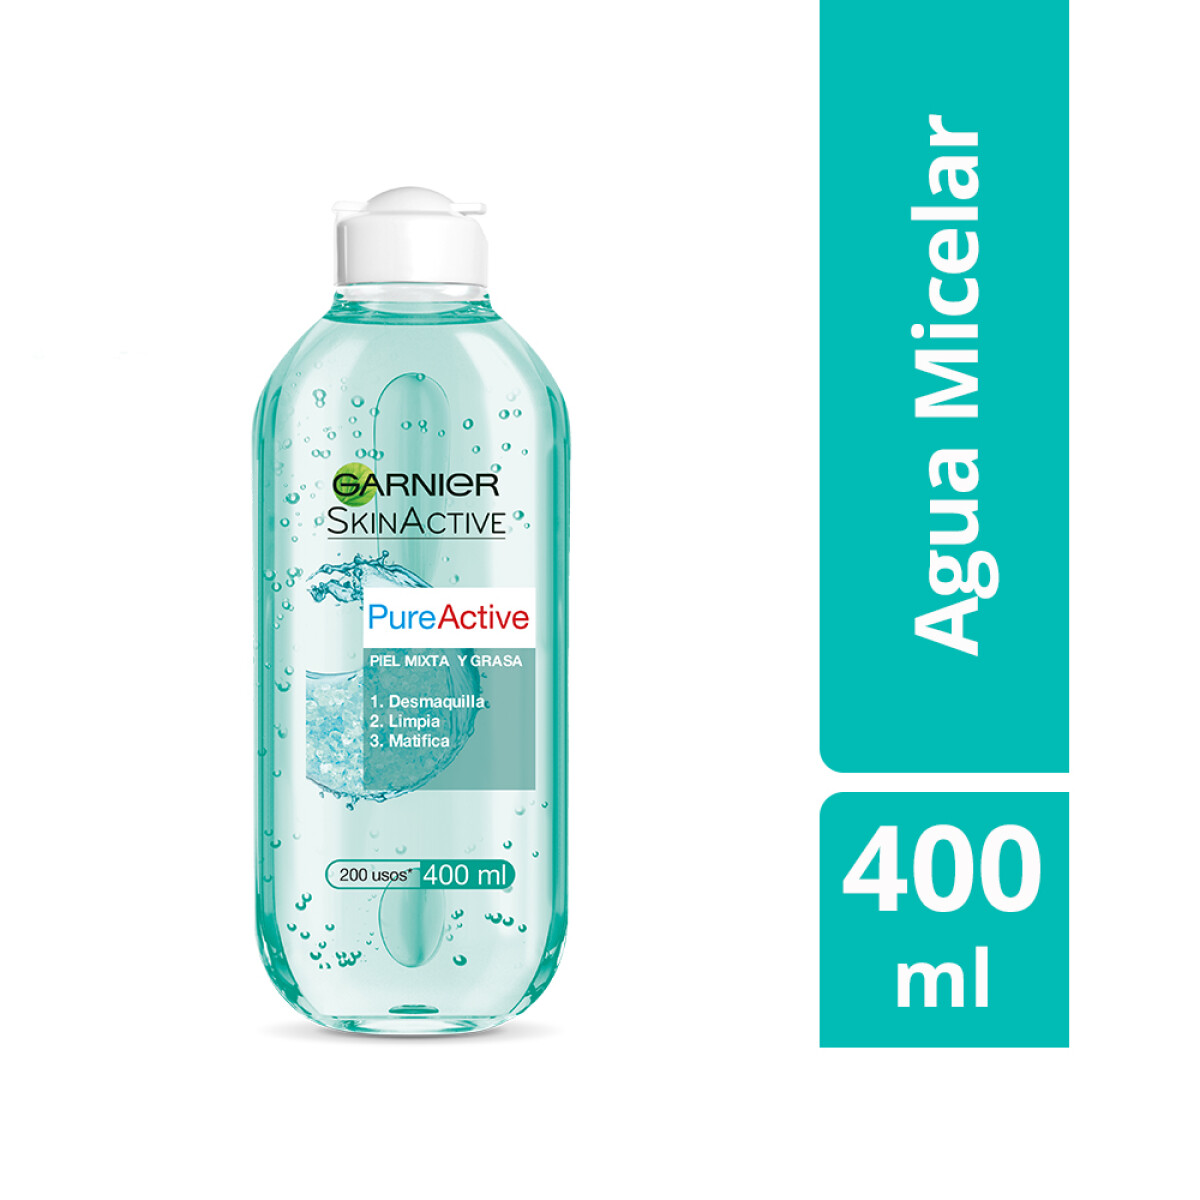 Agua Micelar Garnier Pure Active Pieles Mixtas A Grasas - 001 